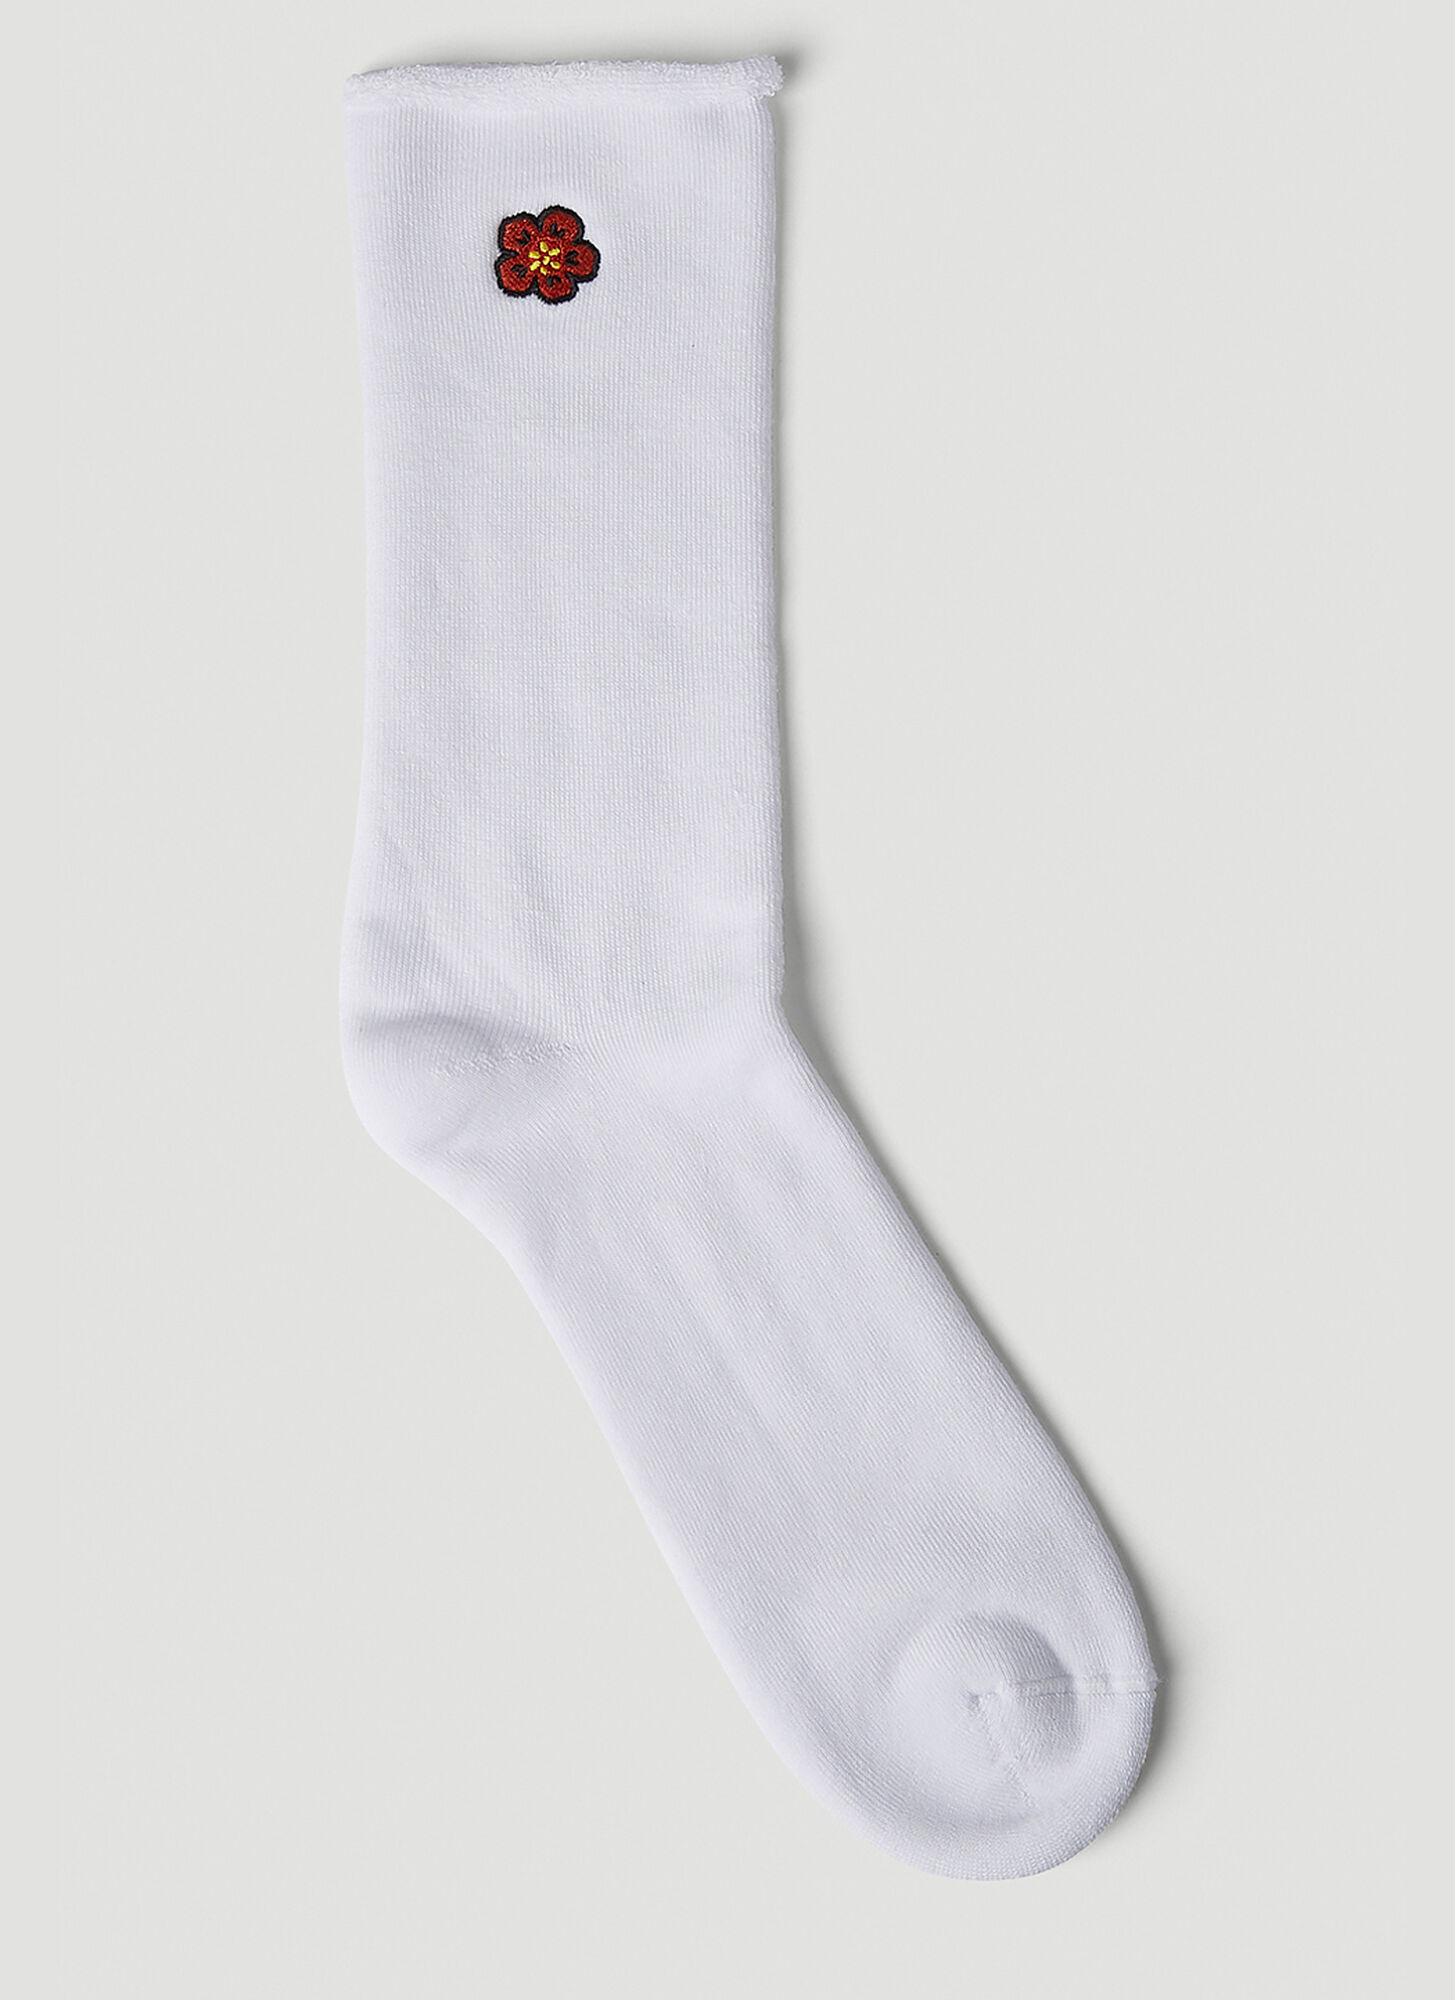 Kenzo Boke Flower Socks Male White